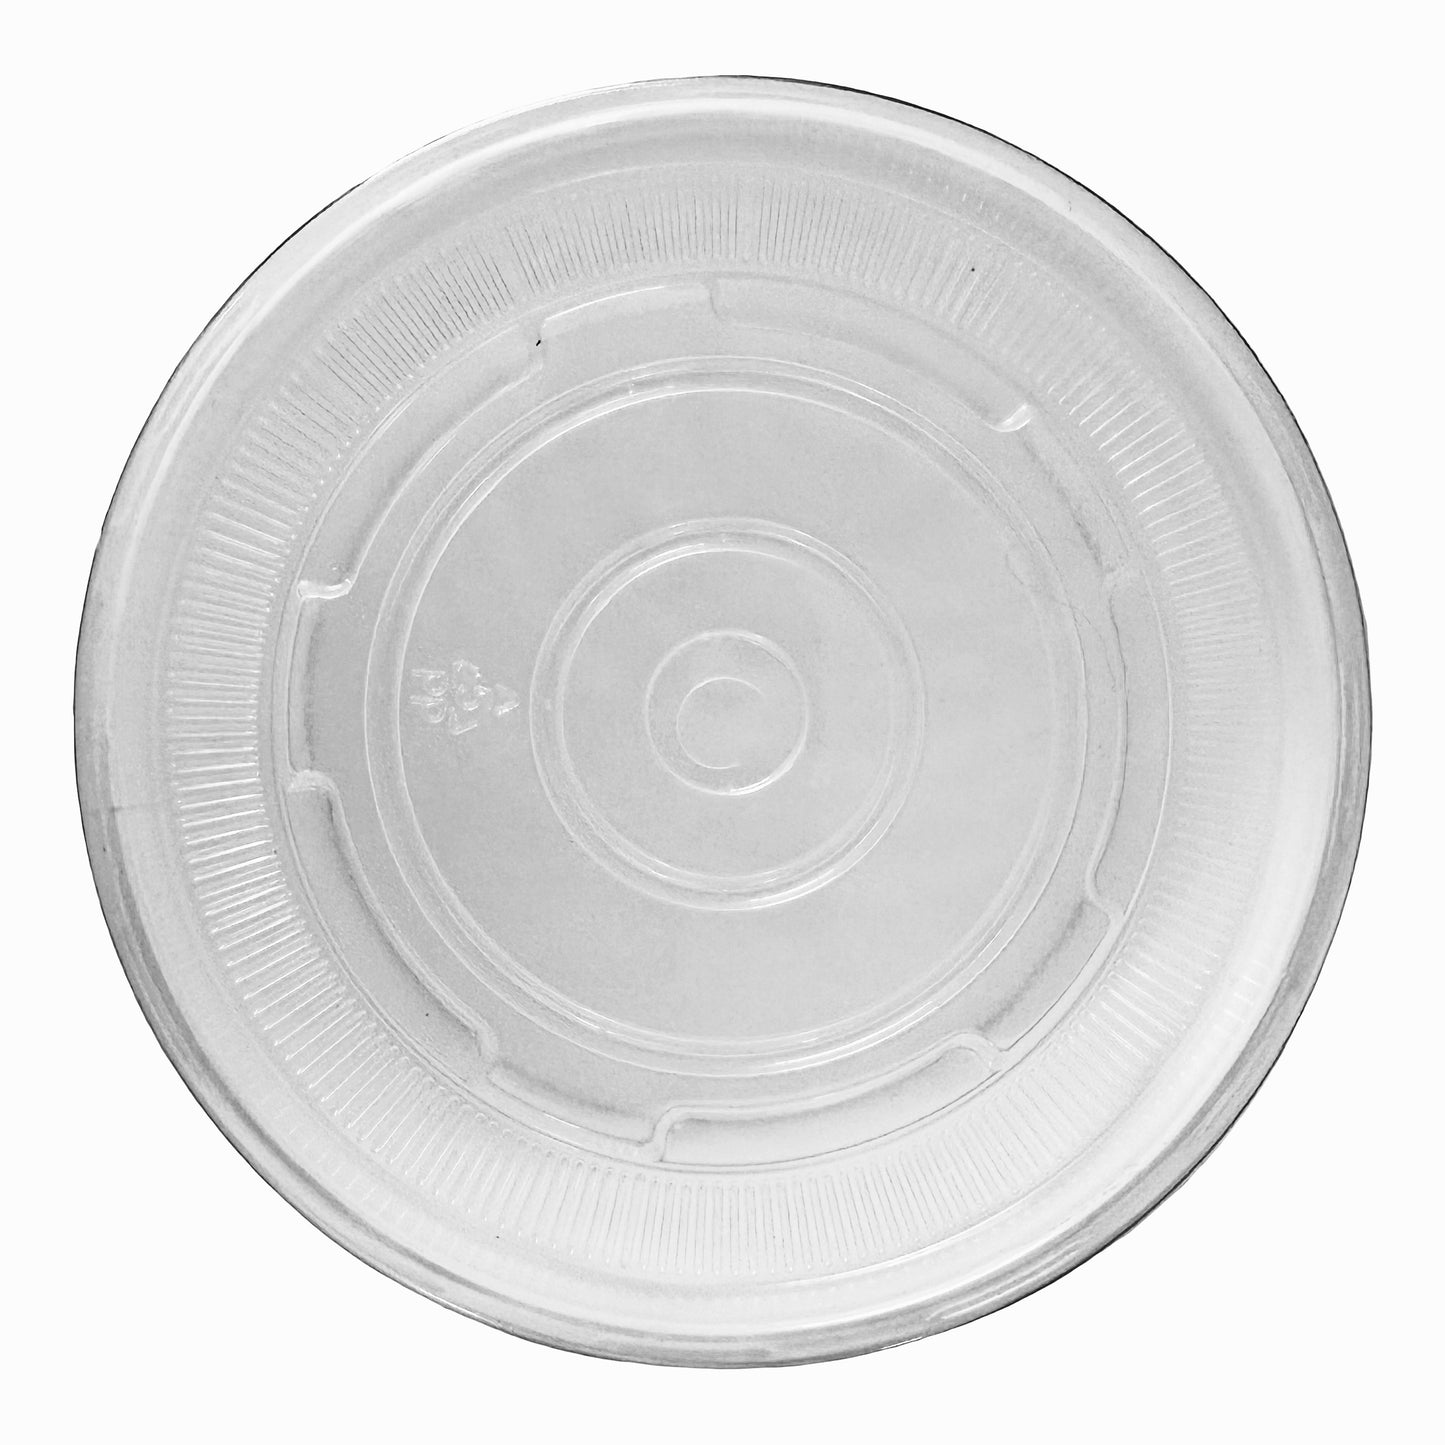 Tapa transparente para recipiente de papel para alimentos - 8 oz